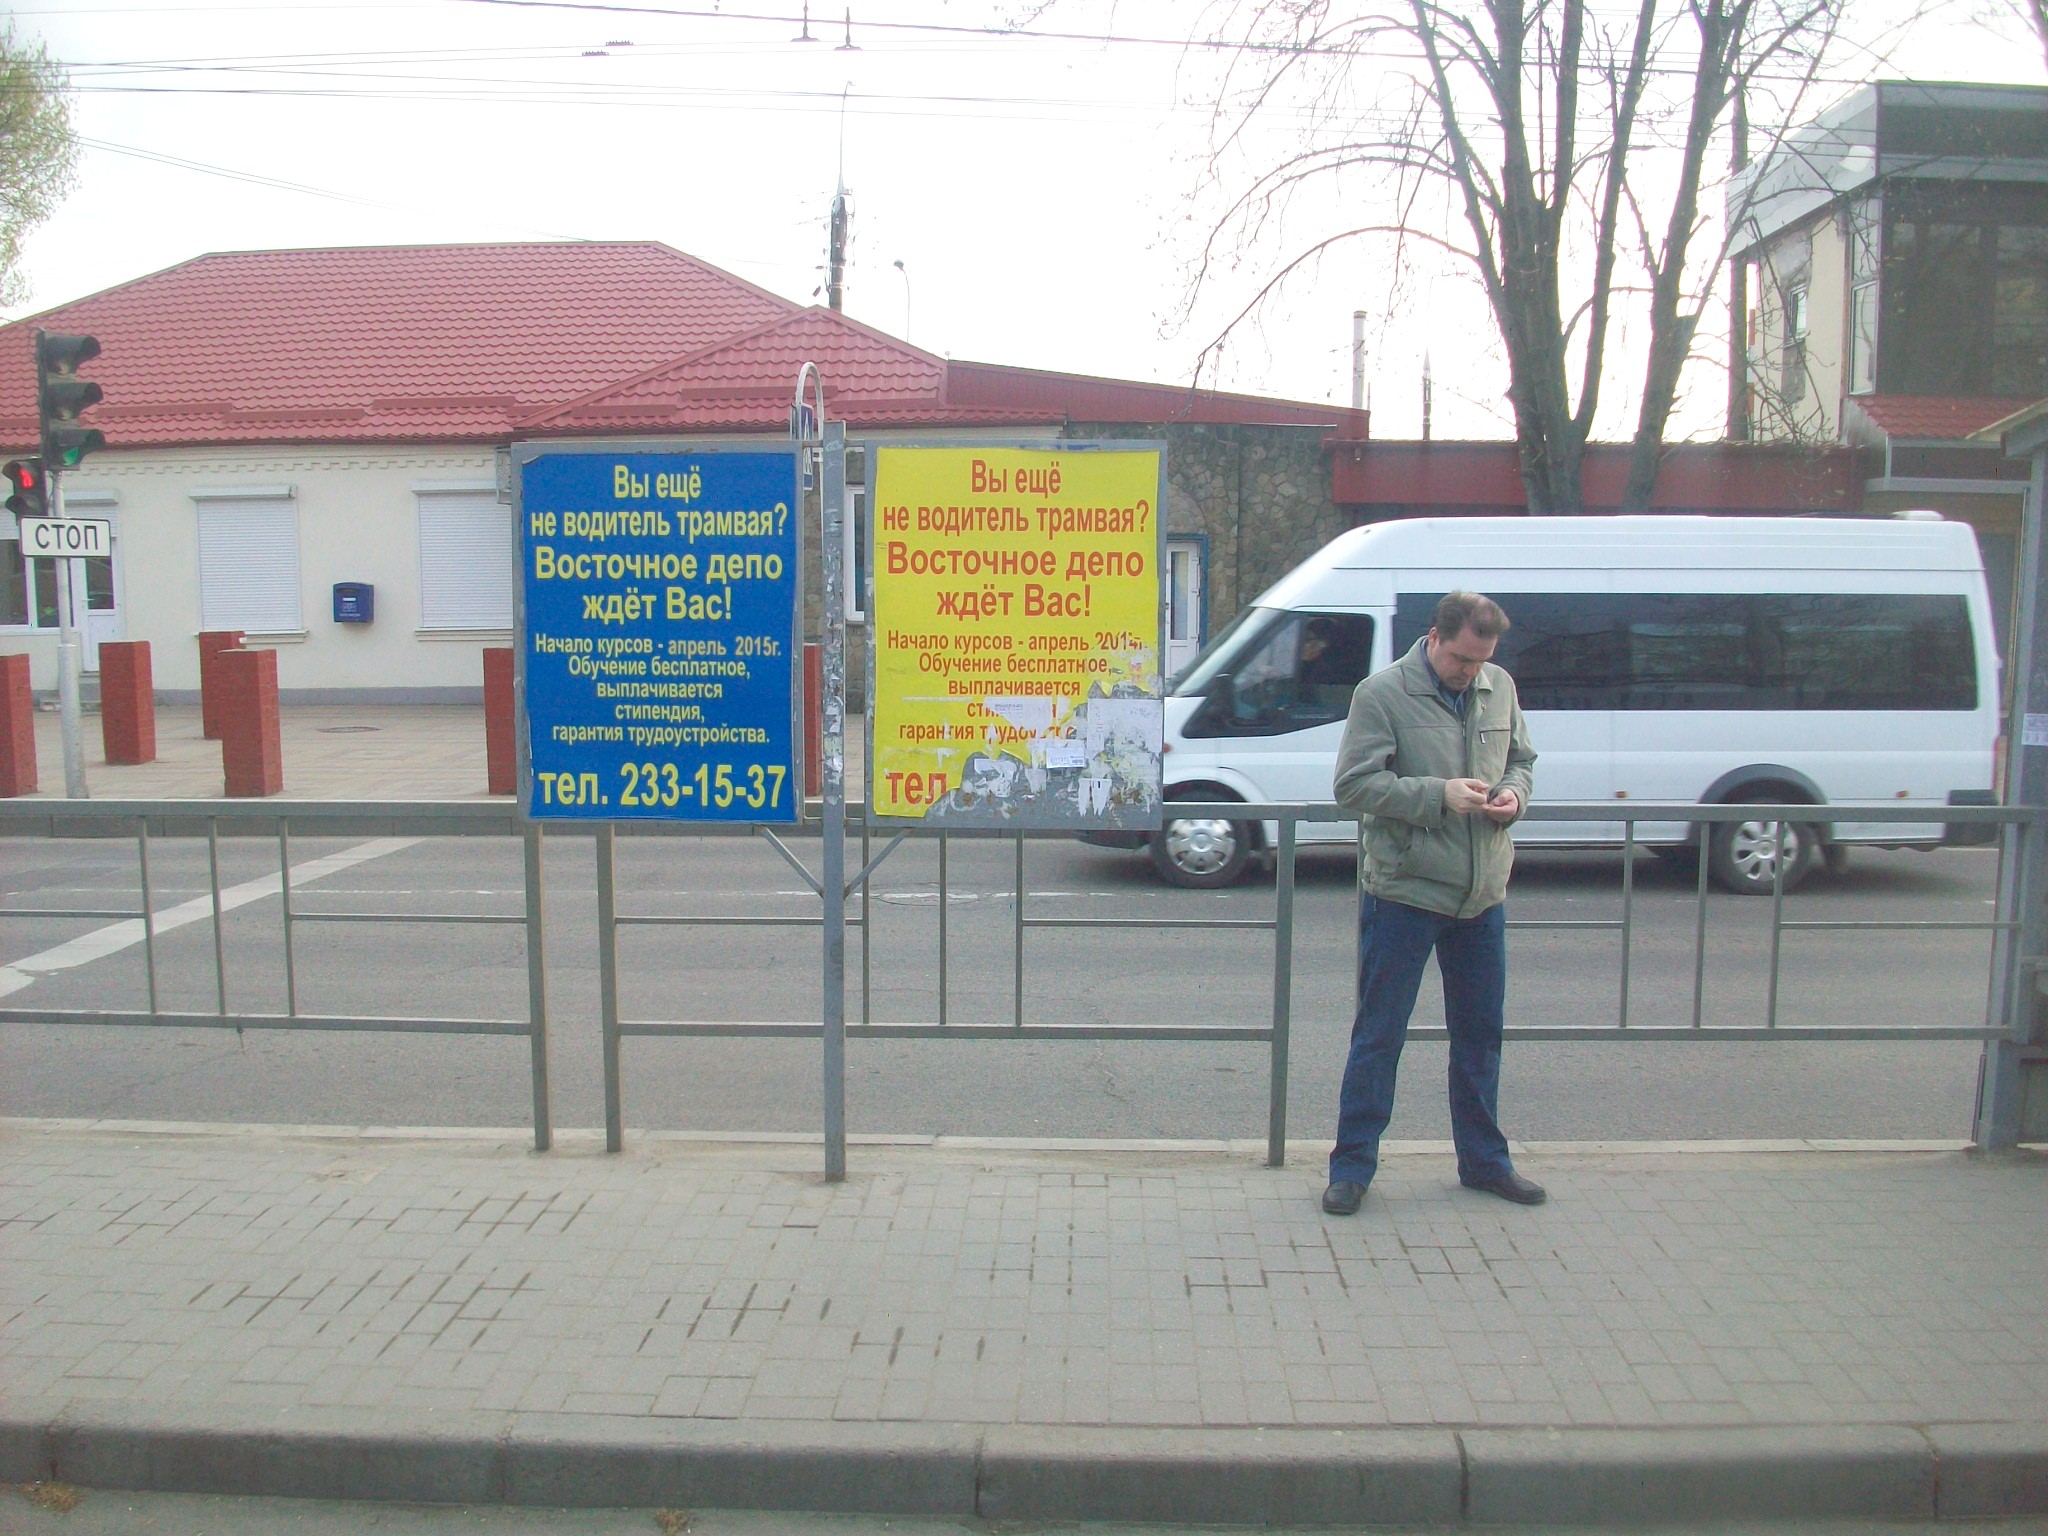 Краснодарский трамвай  —  фотографии, сделанные в 2015 году (часть 8)